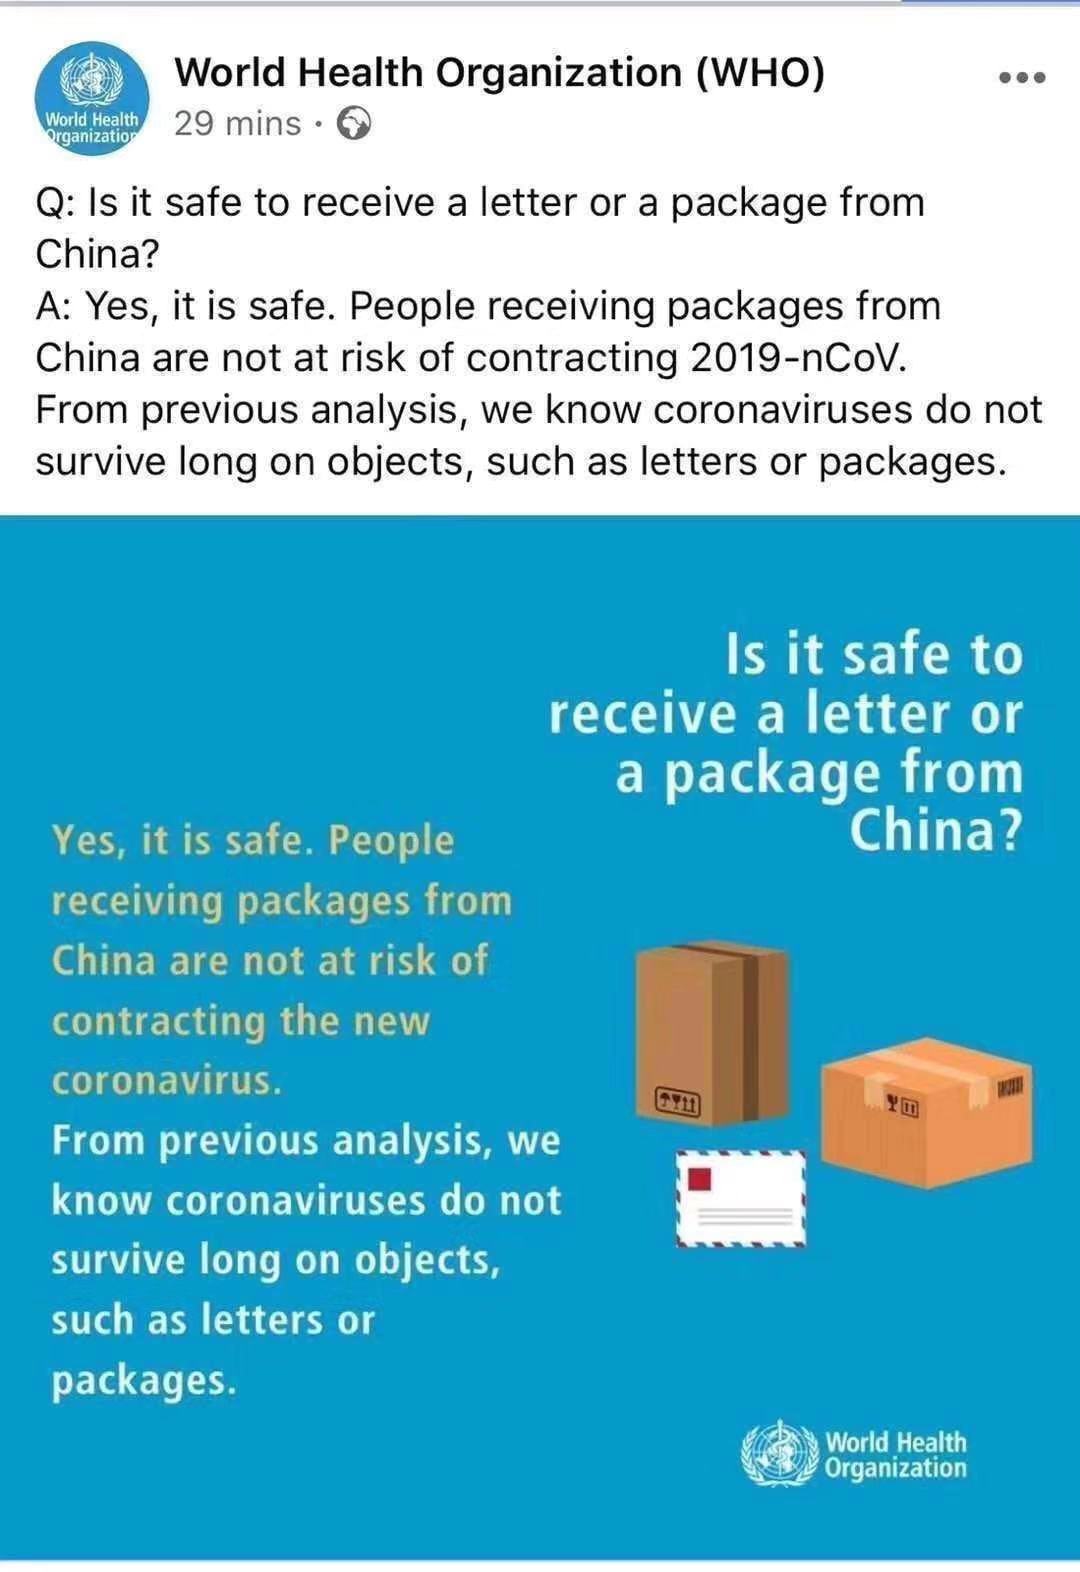 É seguro receber uma carta ou pacote da China?
        